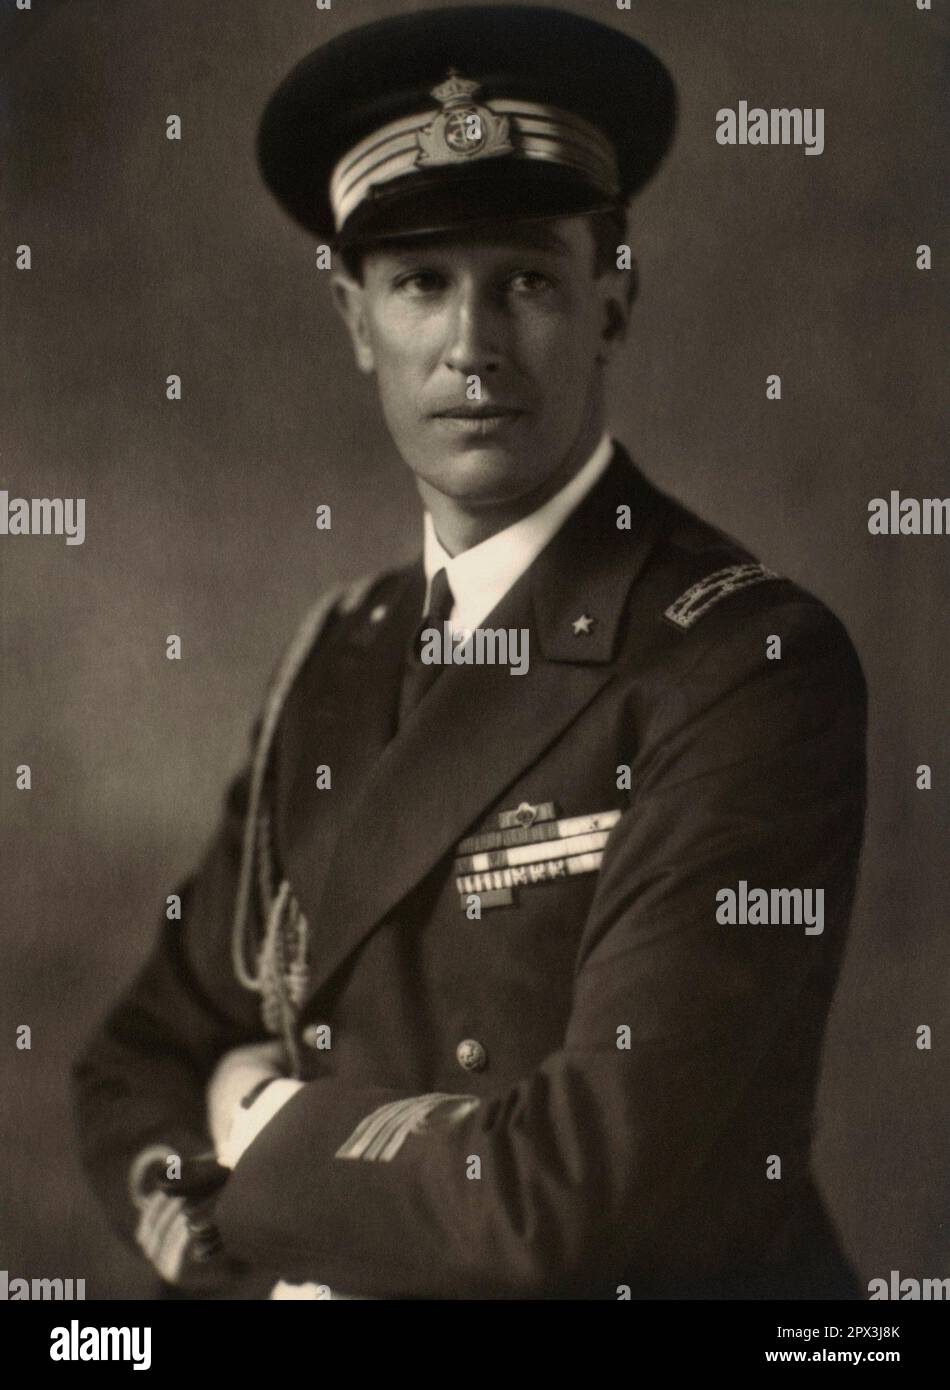 1935 c., Rom , ITALIEN : der italienische Marineadmiral Prince AIMONE di SAVOIA Duca d' AOSTA ( 1900 - 1948 ). Der zweite Sohn von Prinz Emanuele Filiberto Herzog von Aosta erhielt 1904 den Titel HERZOG VON SPOLETO . 1942 erbt er den Titel Herzog von Aosta nach dem Tod seines Bruders Prinz Amedeo in einem britischen Kriegsgefangenenlager in Nairobi . Foto: EVA BARRETT ( 1879 - 1950 ). - SAVOY - FOTO STORICHE - HISTORY - PRINCIPE - DUCA D'Aosta - ITALIA - CASA SAVOIA - REALI - NOBILTA' ITALIANA - SAVOY - ADEL - KÖNIGSFAMILIE - Königsfamilie - nobili italiani - nobiltà italiana - Portrait Stockfoto